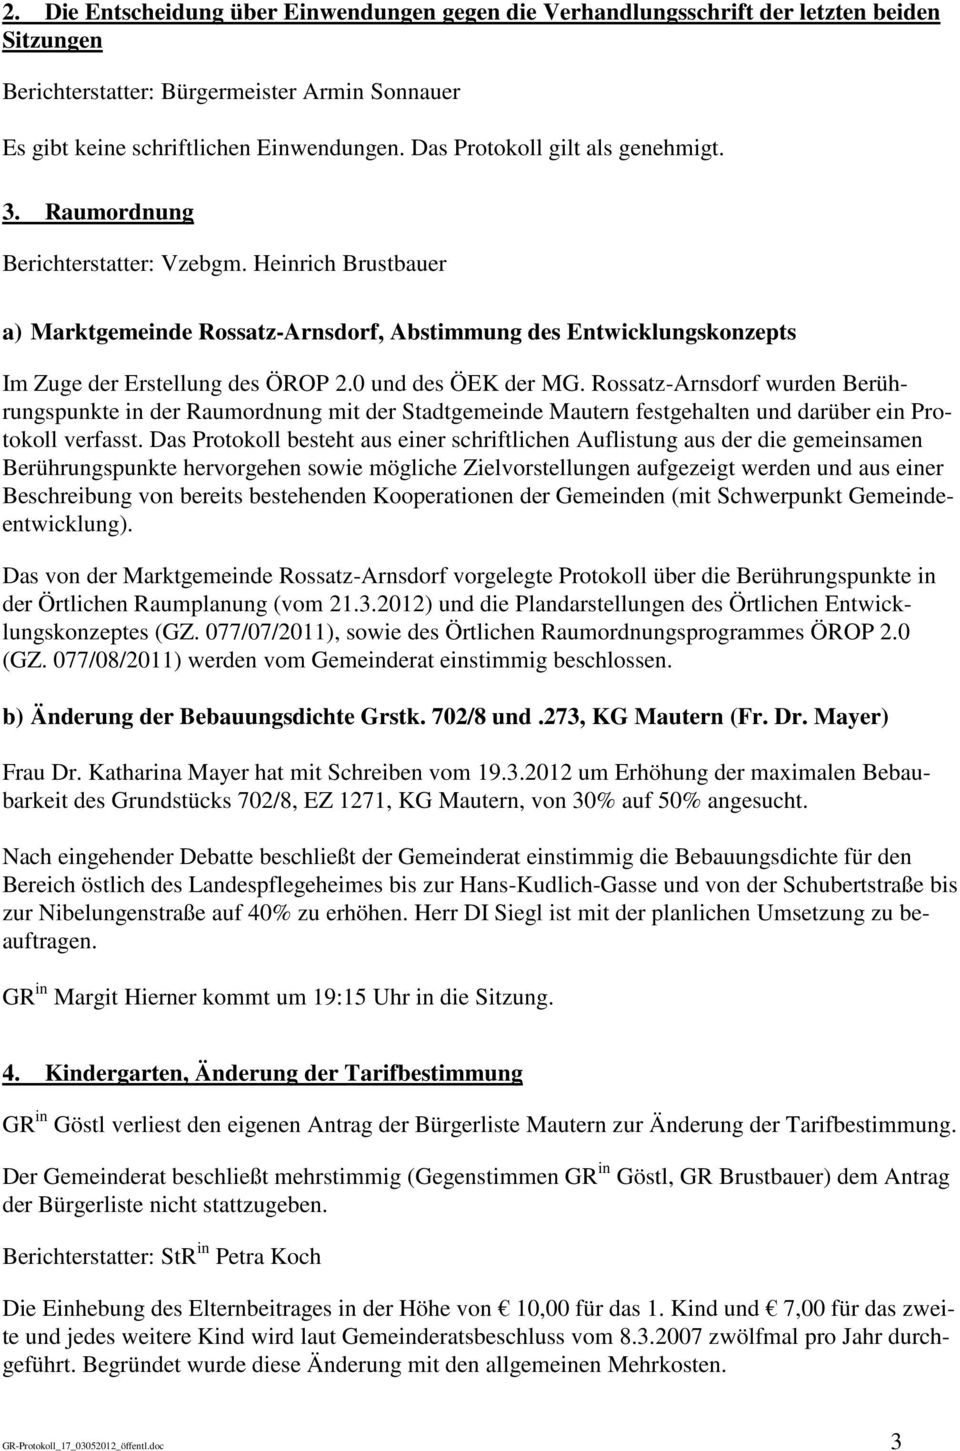 0 und des ÖEK der MG. Rossatz-Arnsdorf wurden Berührungspunkte in der Raumordnung mit der Stadtgemeinde Mautern festgehalten und darüber ein Protokoll verfasst.